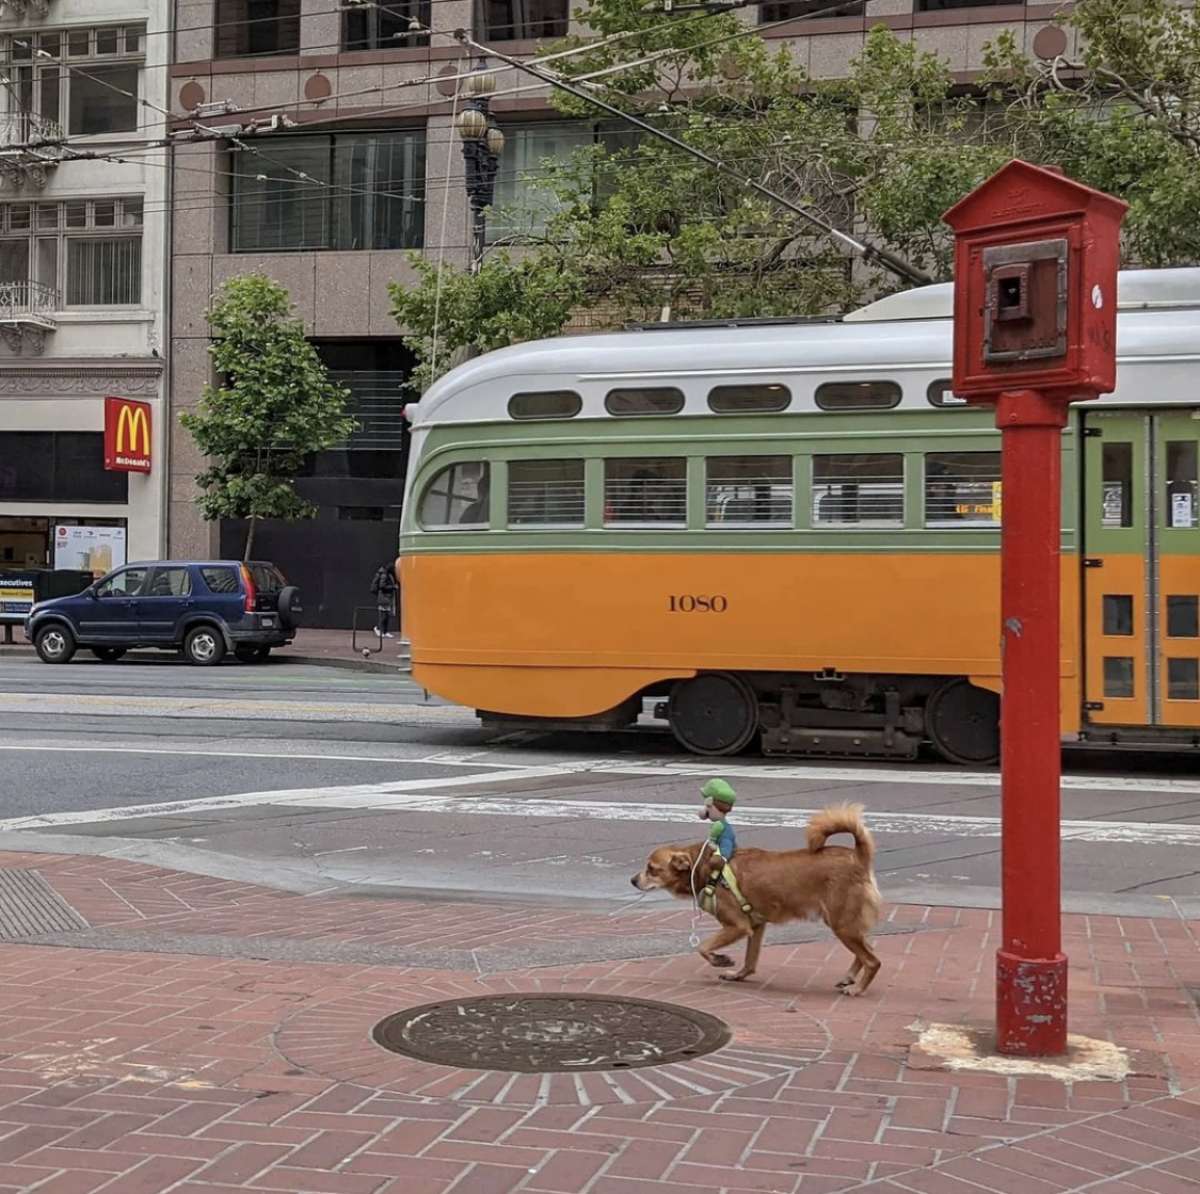 El fotógrafo Sage Akaboshi siempre tiene una cámara en la mano para capturar lo que ve en las calles de San Francisco. Comparte sus imágenes en su Instagram, @pueo_in_sf.